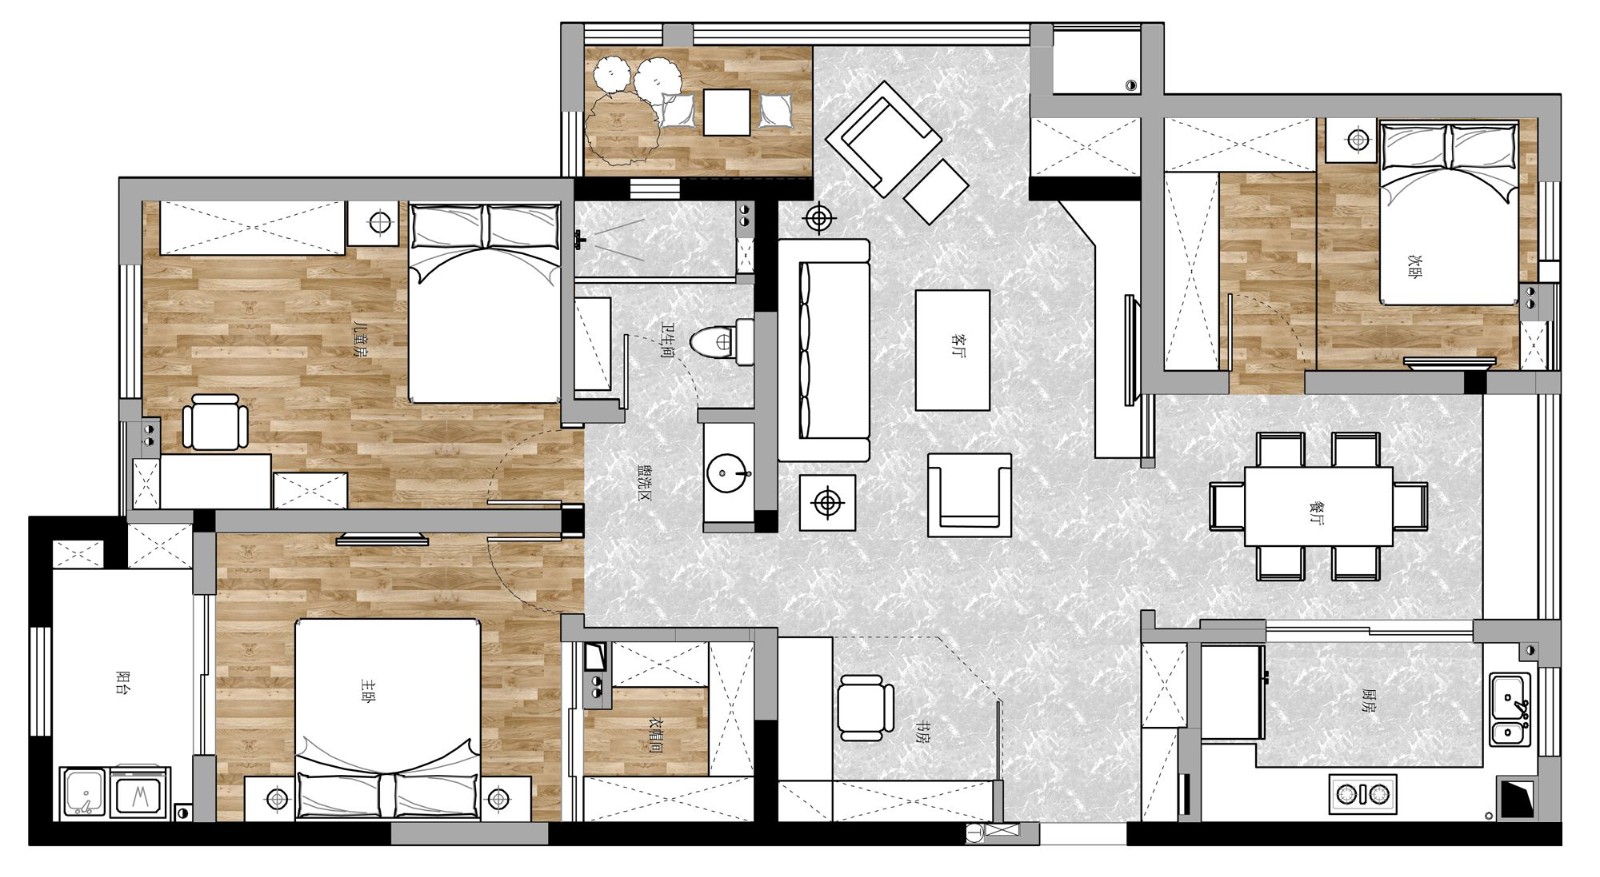 107现代三房装修效果图,轻松惬意现代整屋3居装修案例效果图-美广网(图1)